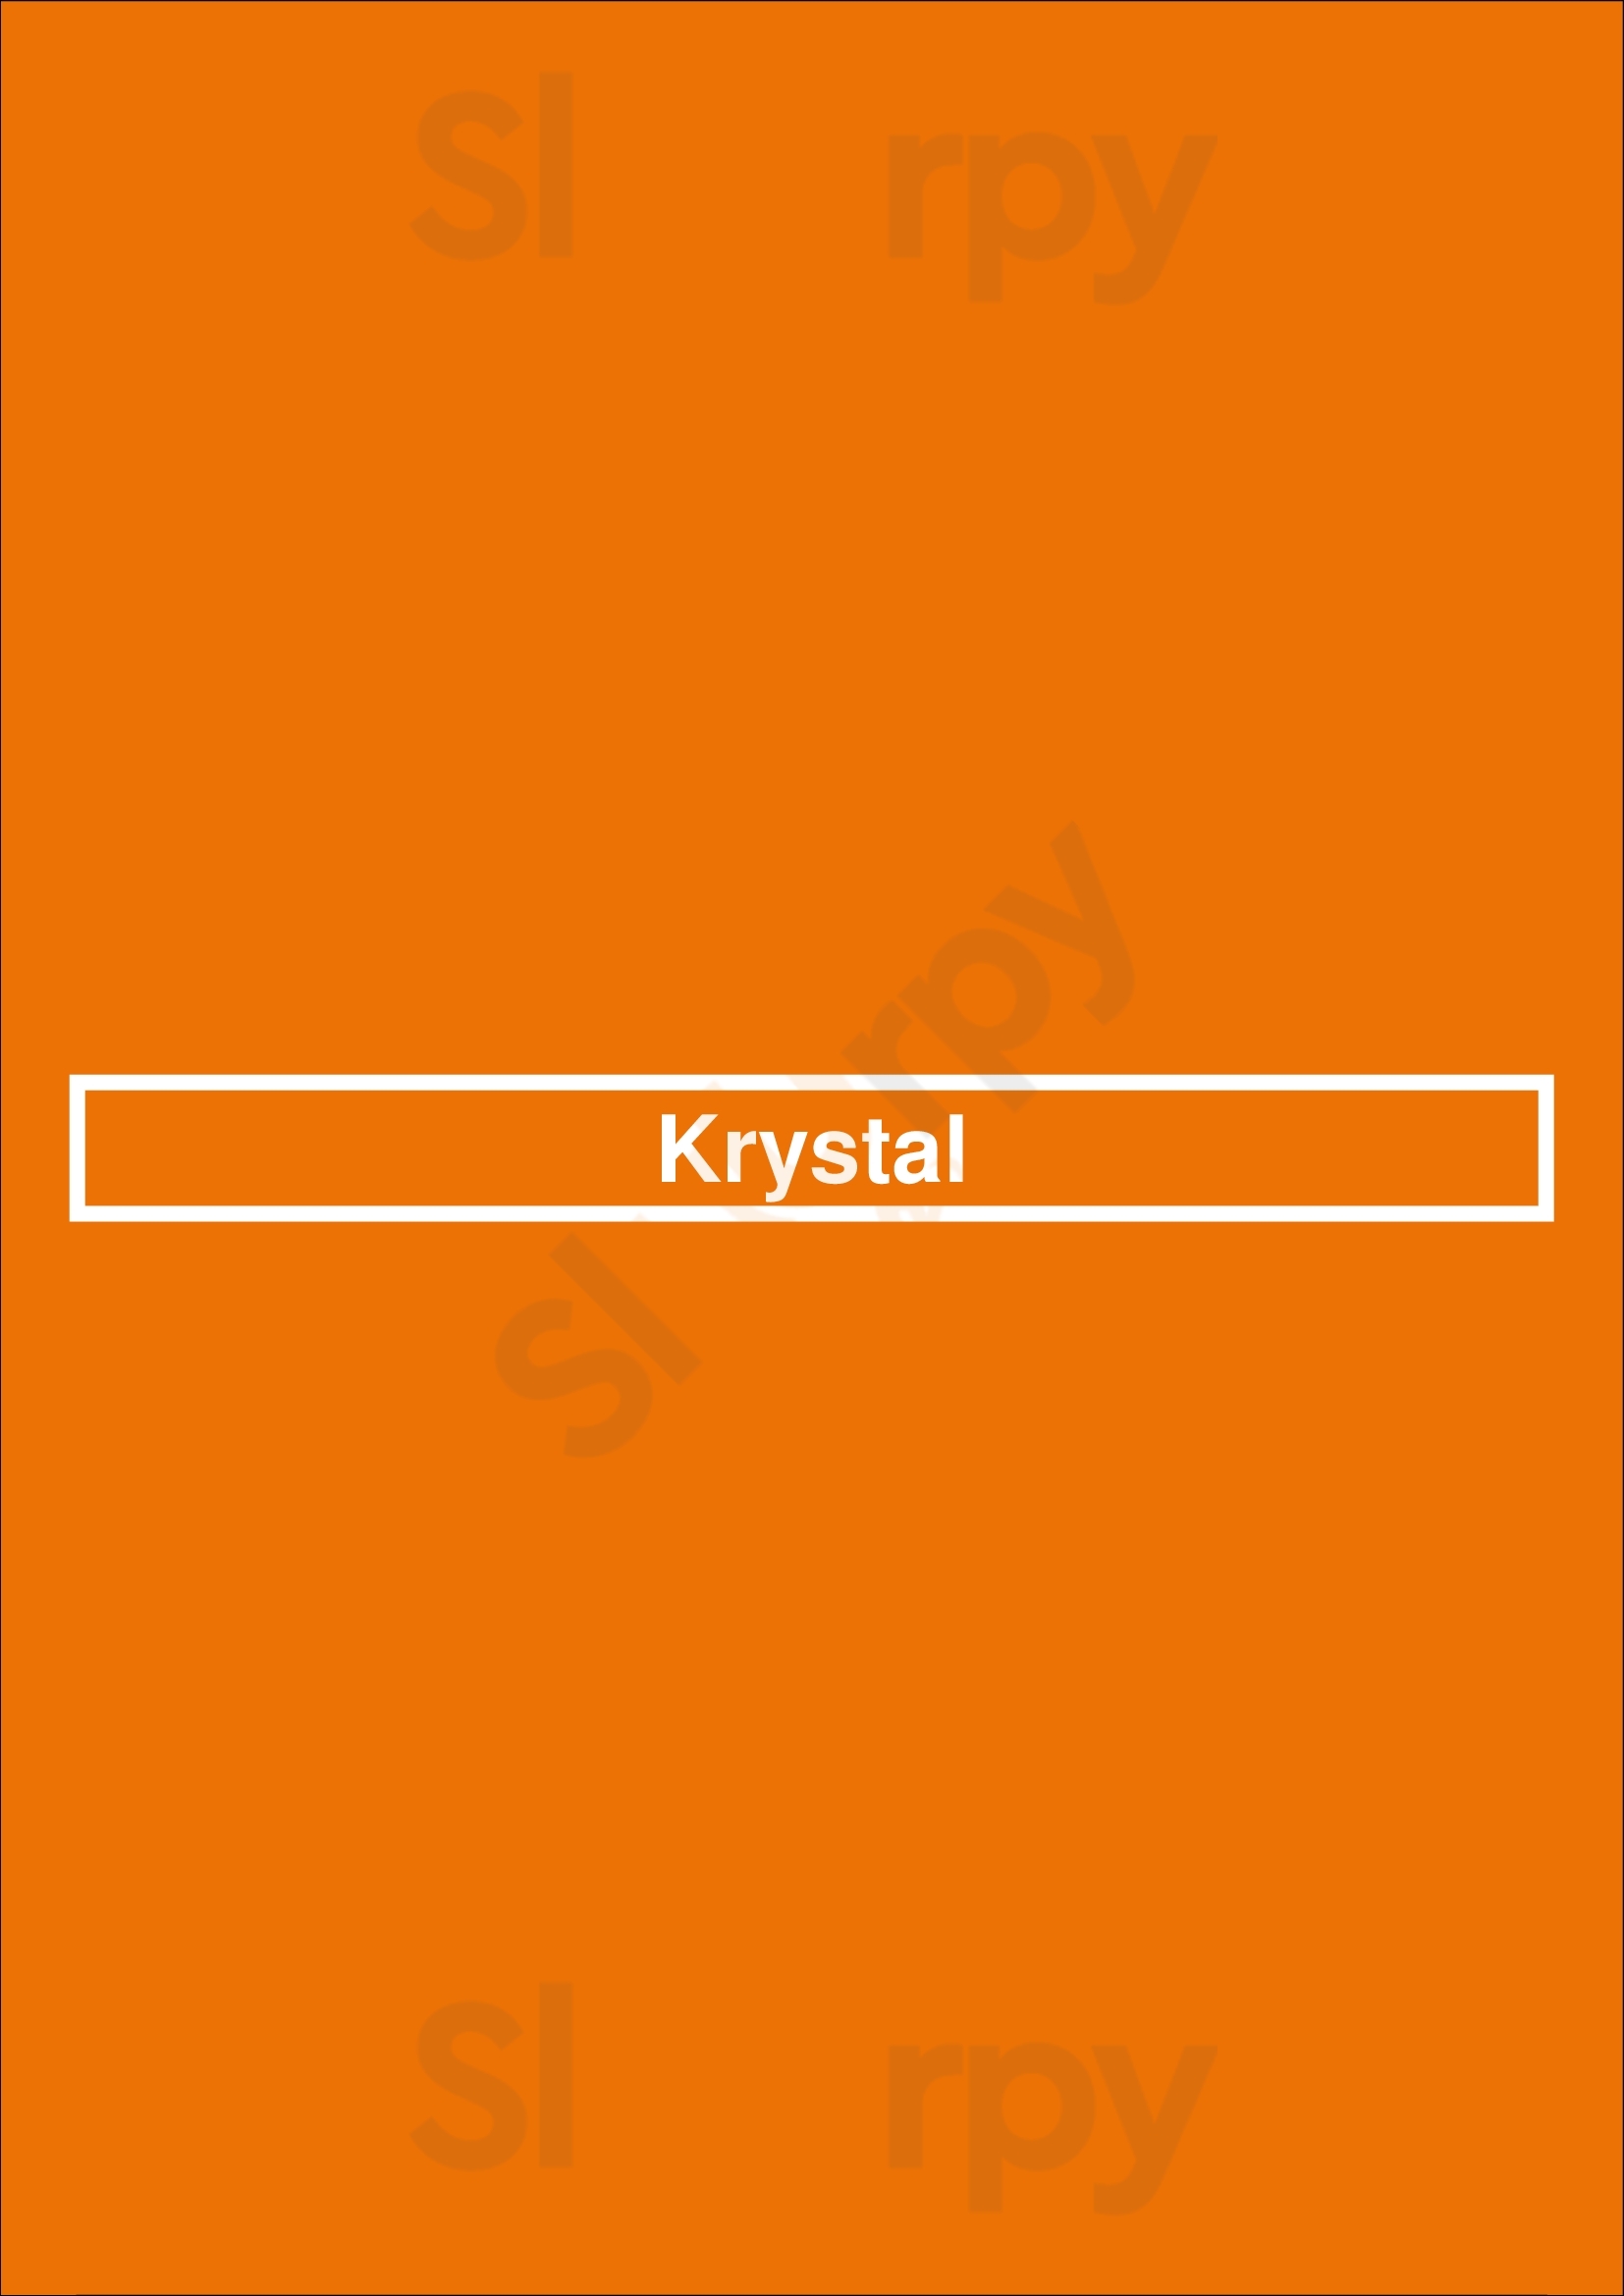 Krystal Memphis Menu - 1